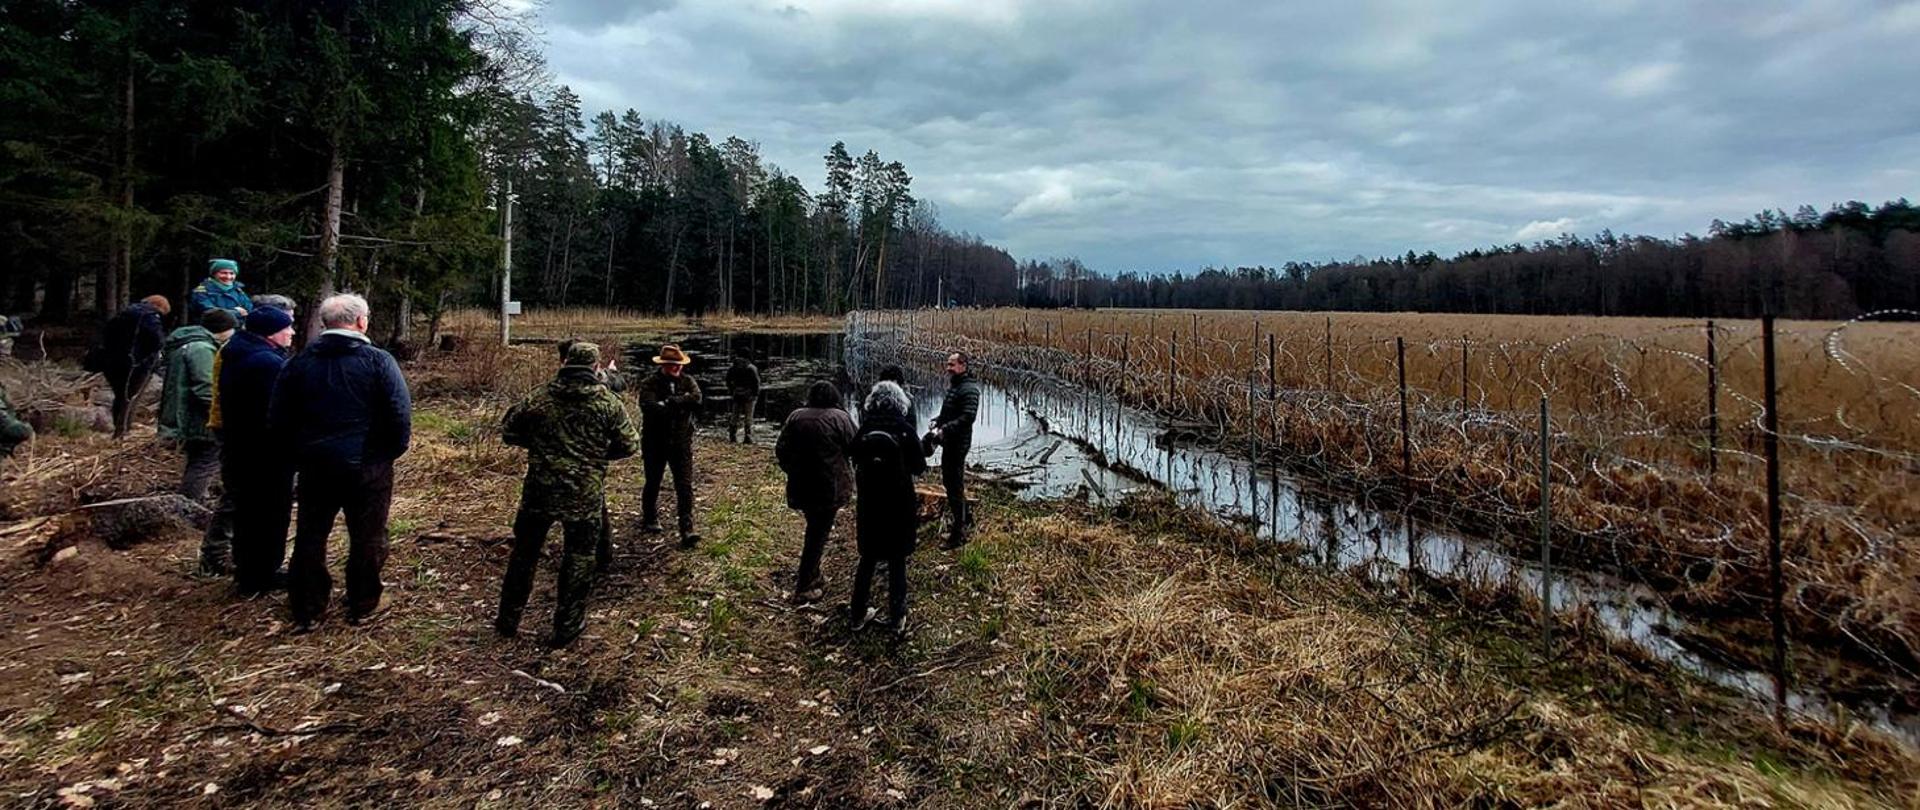 Misja kontrolna w polskiej części Obiektu Światowego Dziedzictwa Białowieża Forest dobiegła końca